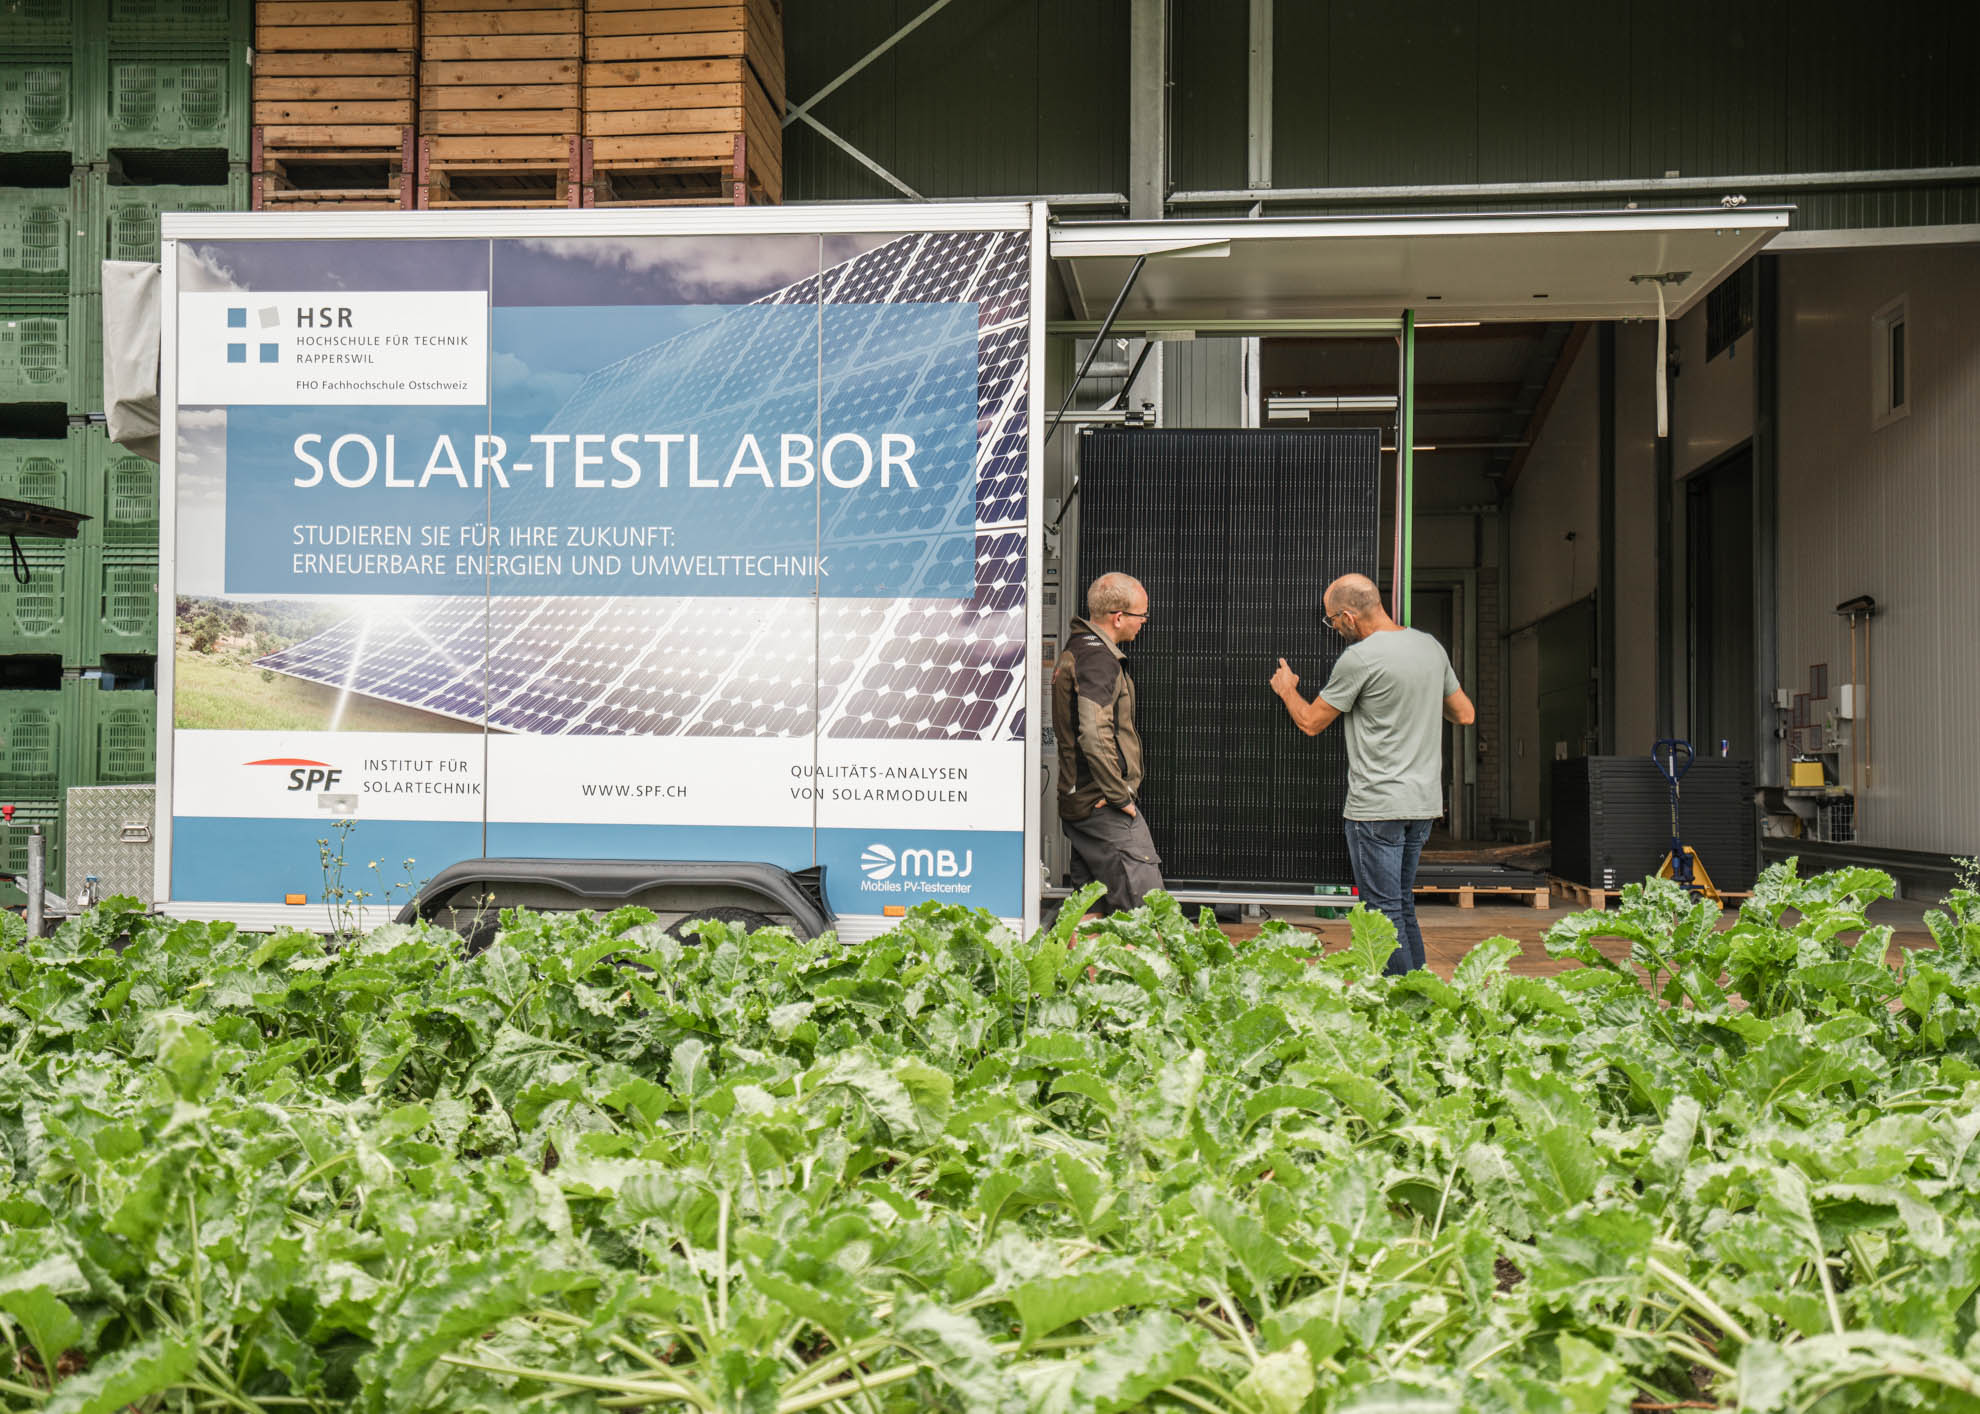 Solar-Testlabor - Heinz Simmler kontrolliert die Solarpanels.